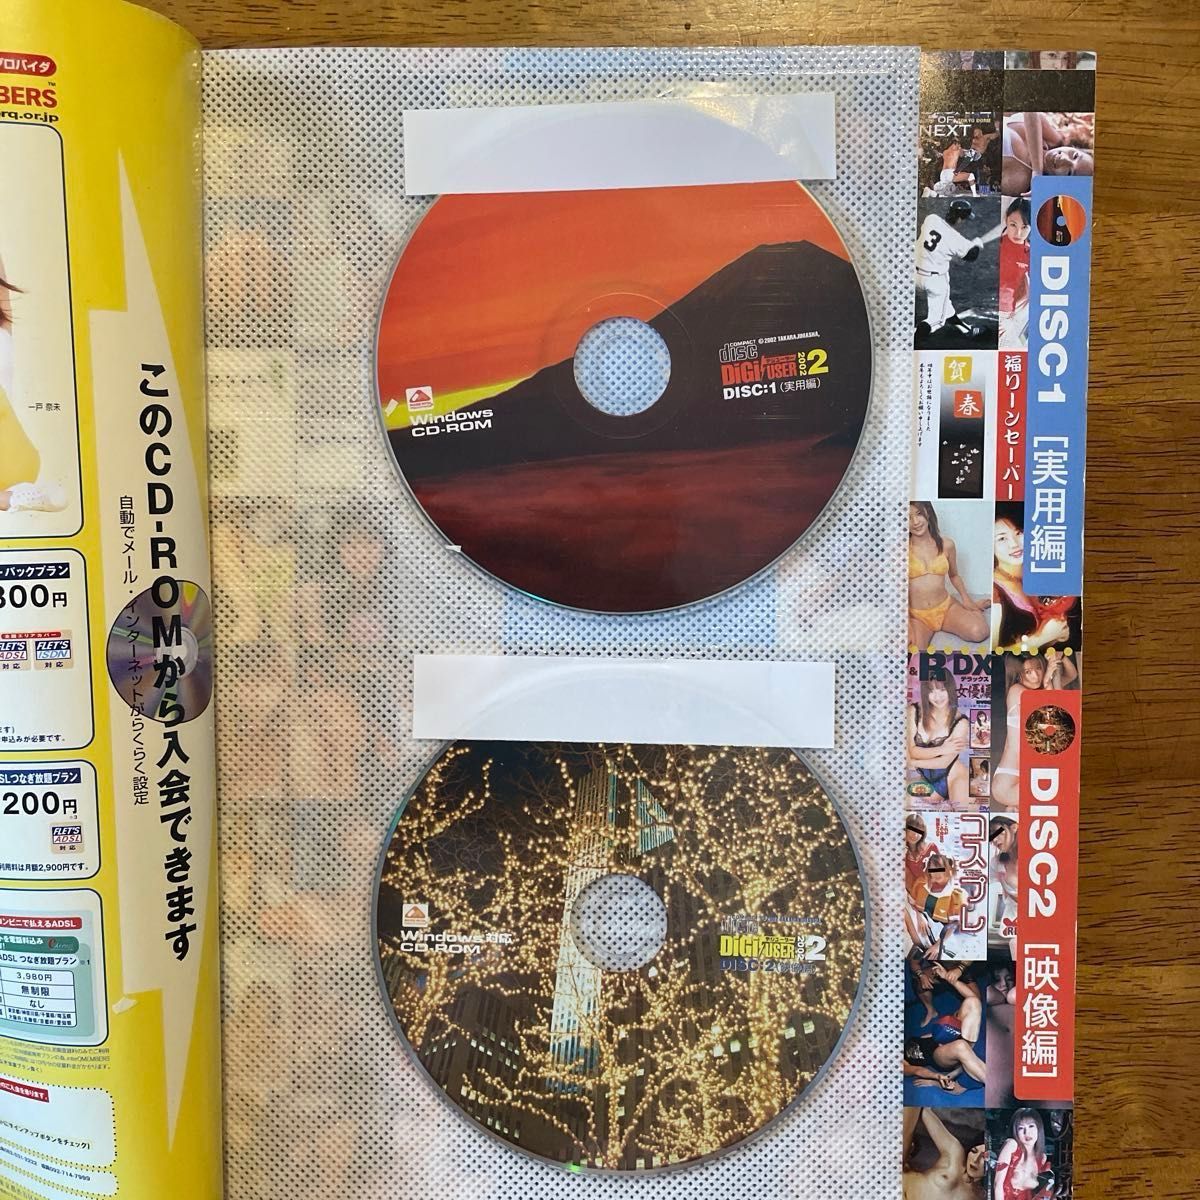 雑誌「デジユーザー」未開封CD-ROM2枚付き、2002年発行、吉岡美穂表紙